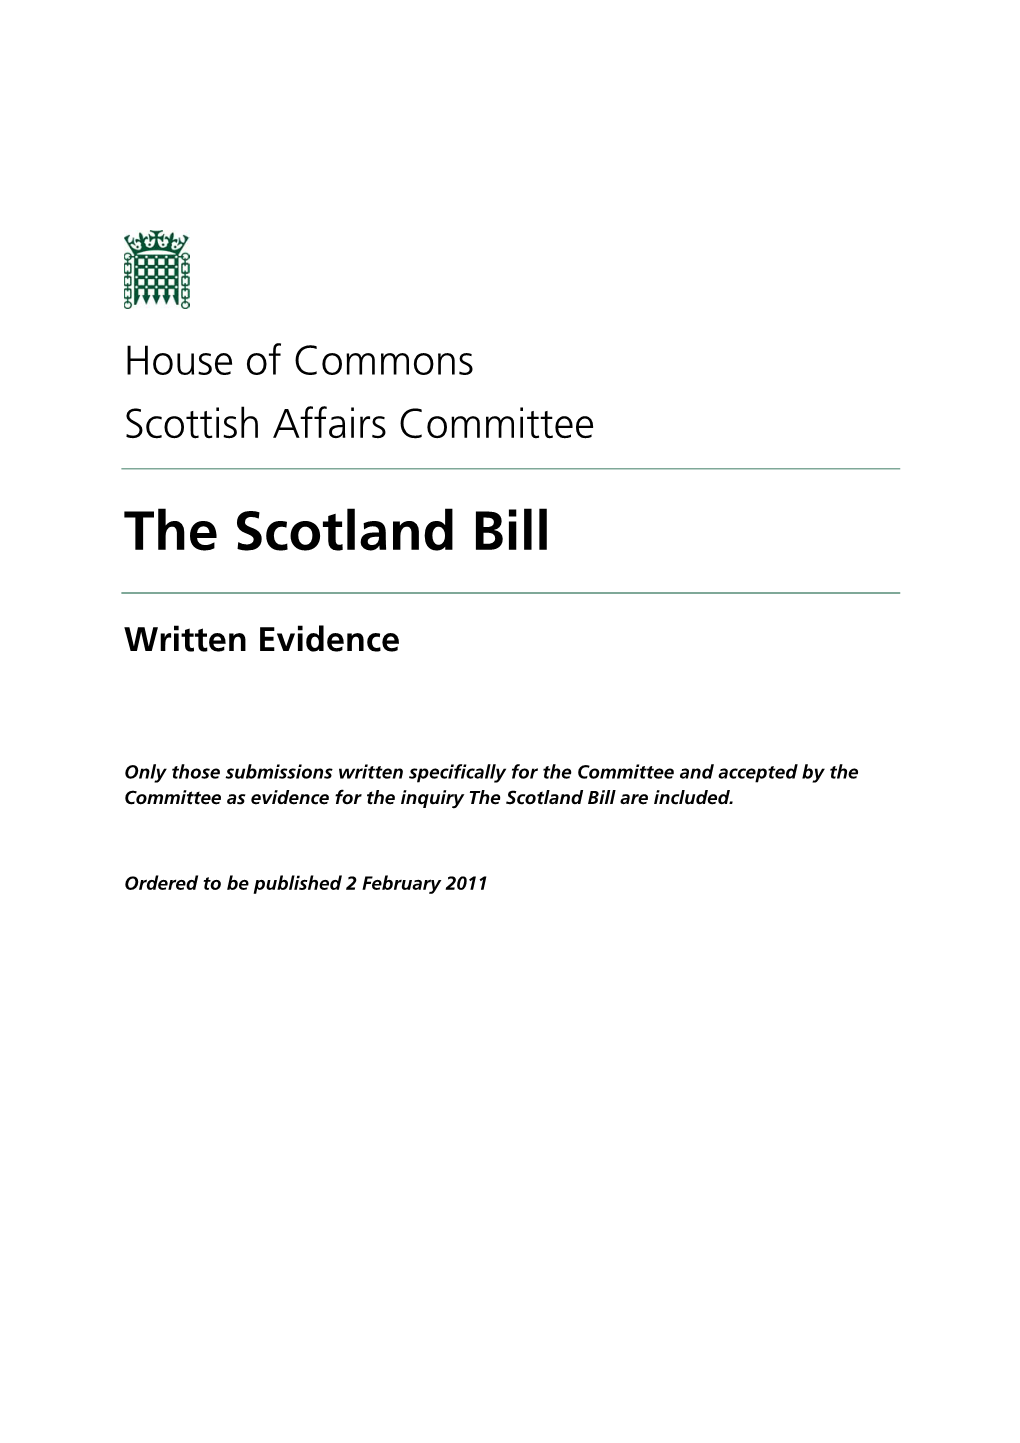 The Scotland Bill